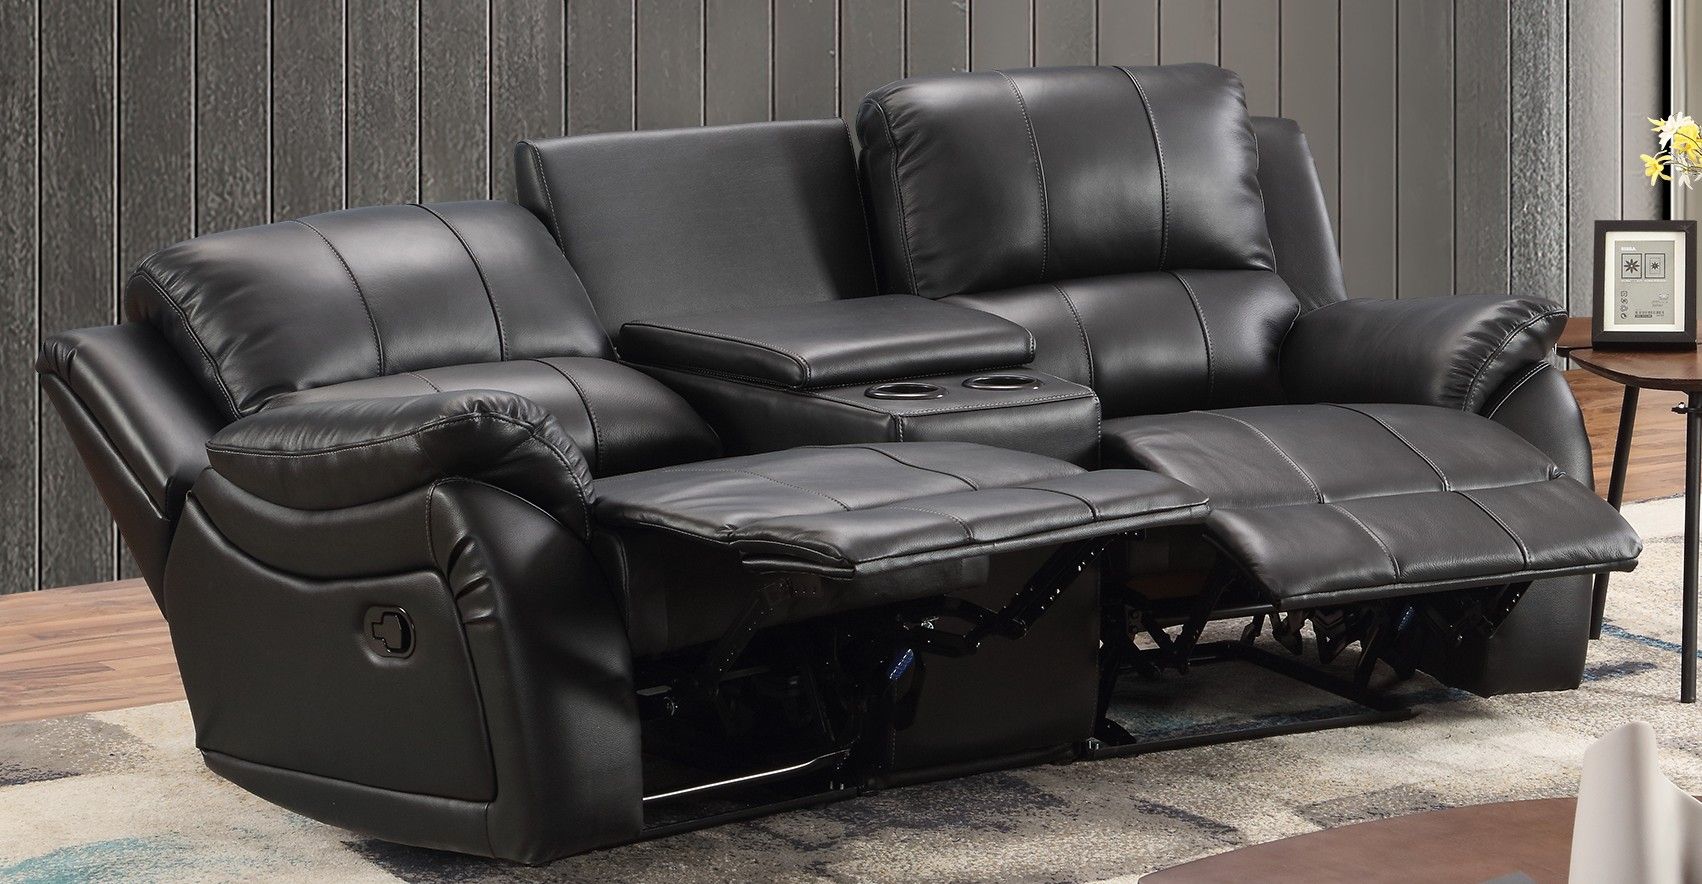 Mapo Möbel 2-Sitzer Kinosofa mit Liegefunktion und elektrischer Verstellung,schwarz